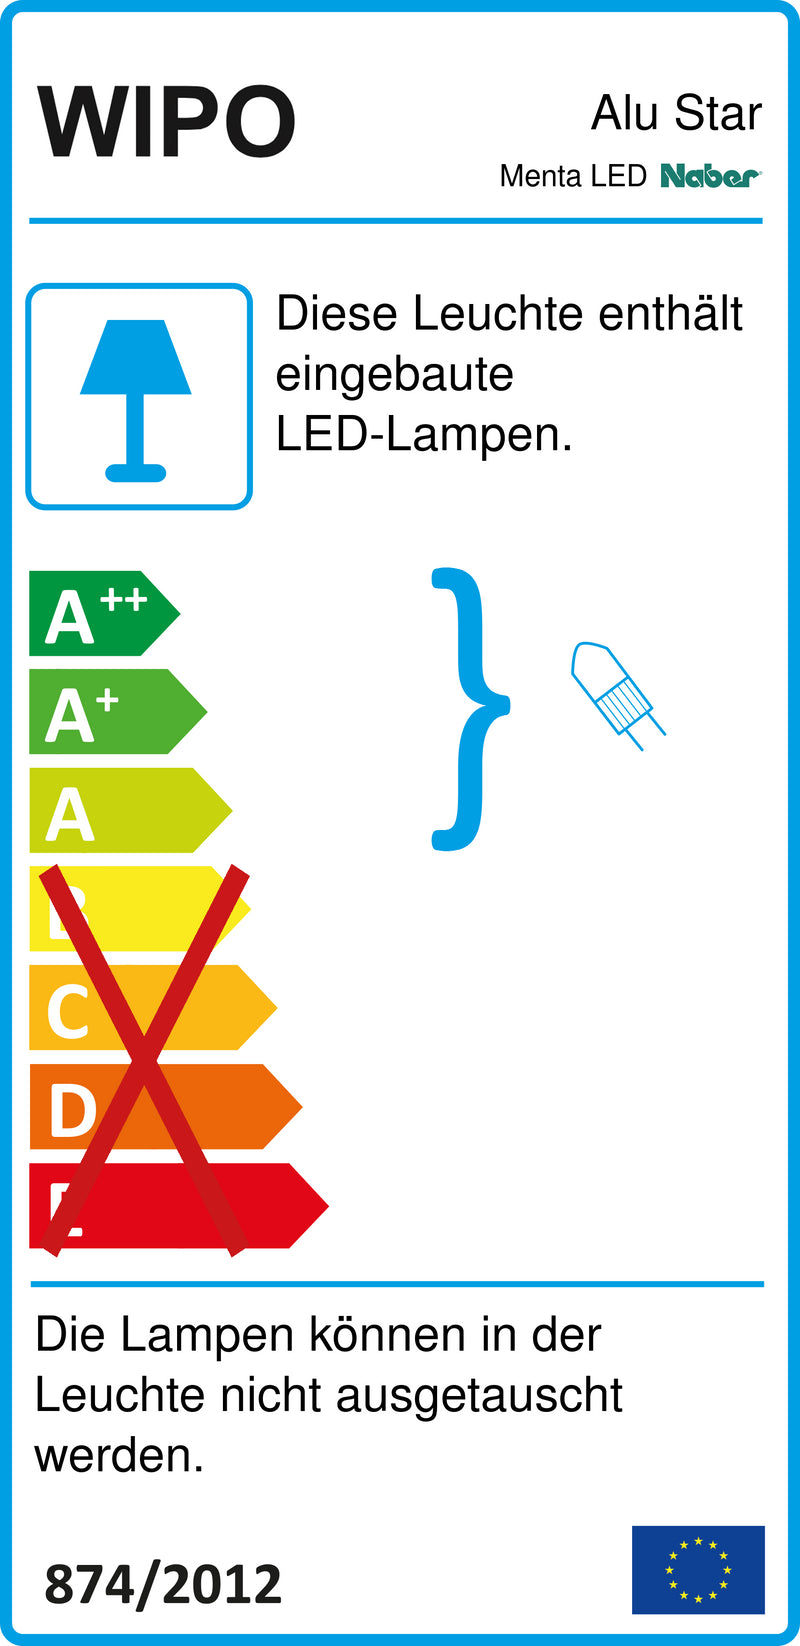 E-Label zu Zeichnung zu Menta LED als Variante Einzelleuchte m. LED Touch S. D., edelstahlfarbig von Naber GmbH in der Kategorie Lichttechnik in Österreich auf conceptshop.at